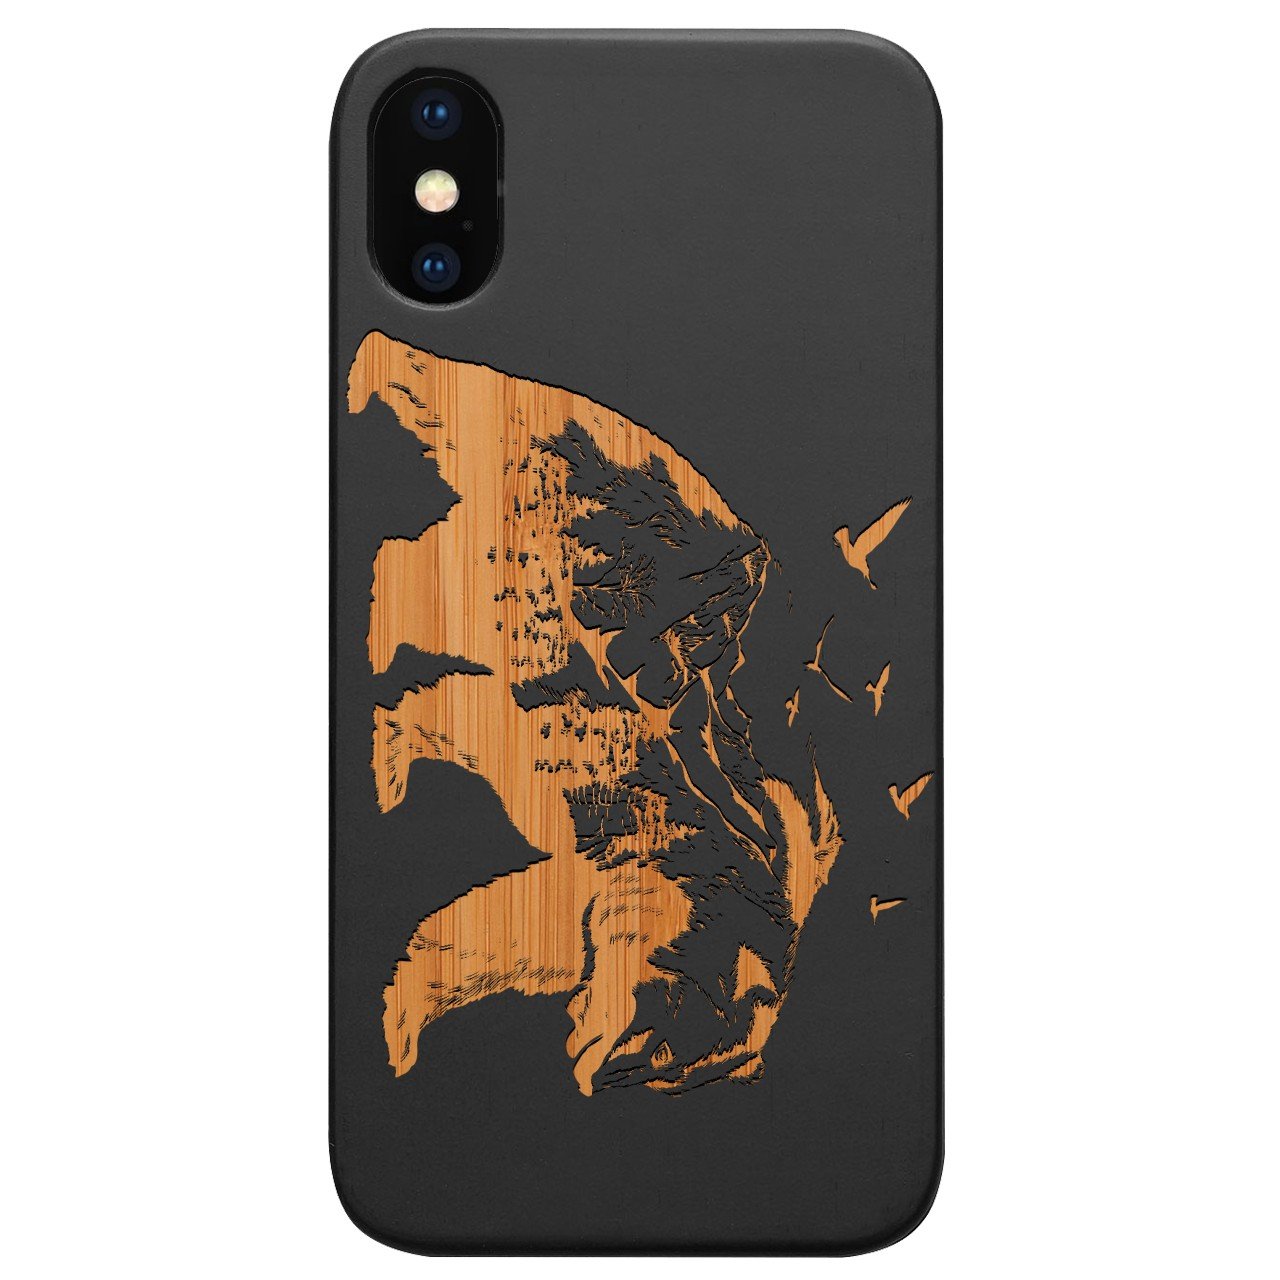 Bear Landscape 2 - Engraved - Wooden Phone Case